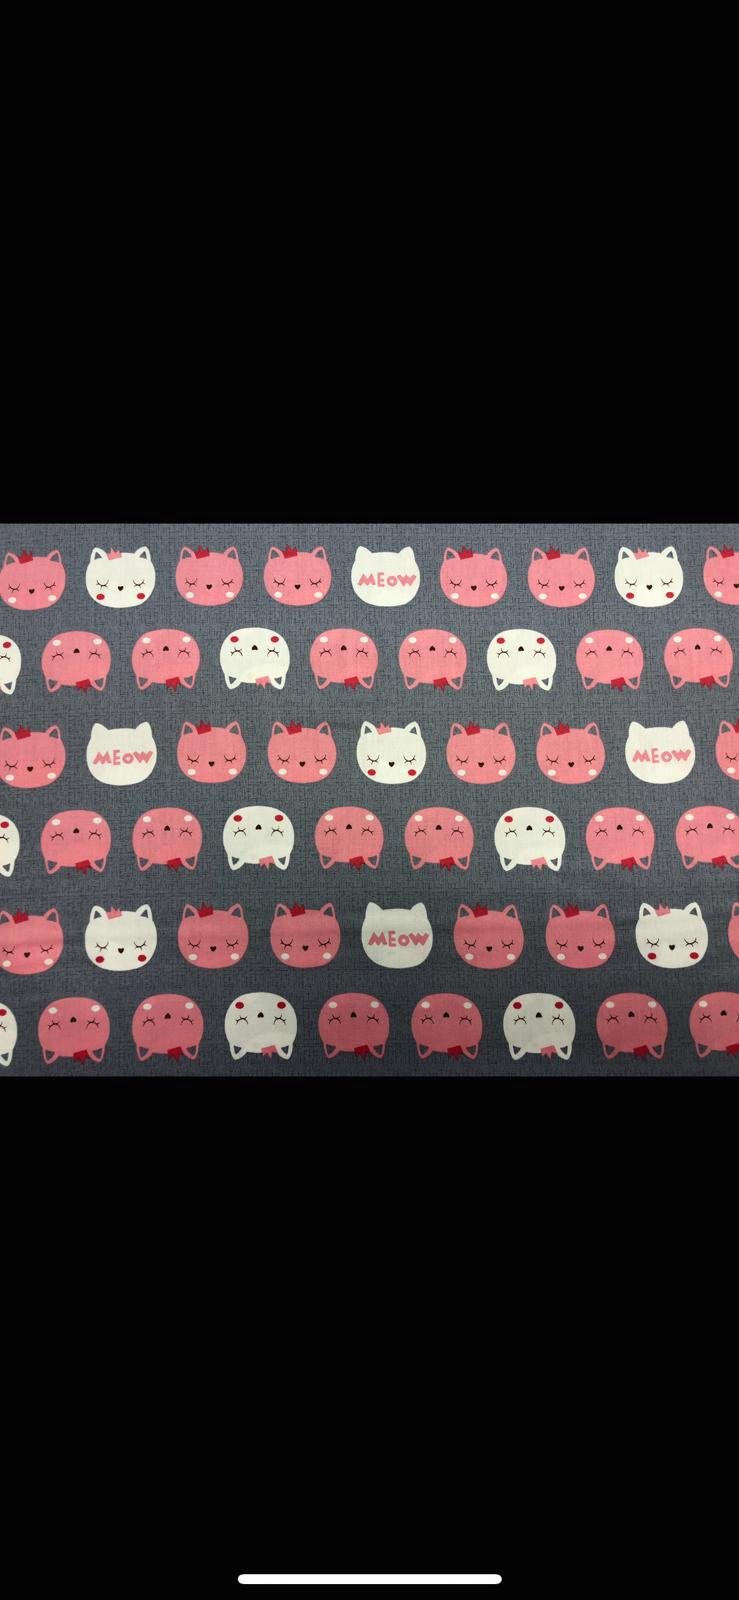 Kitties Meow - Pink/Grey